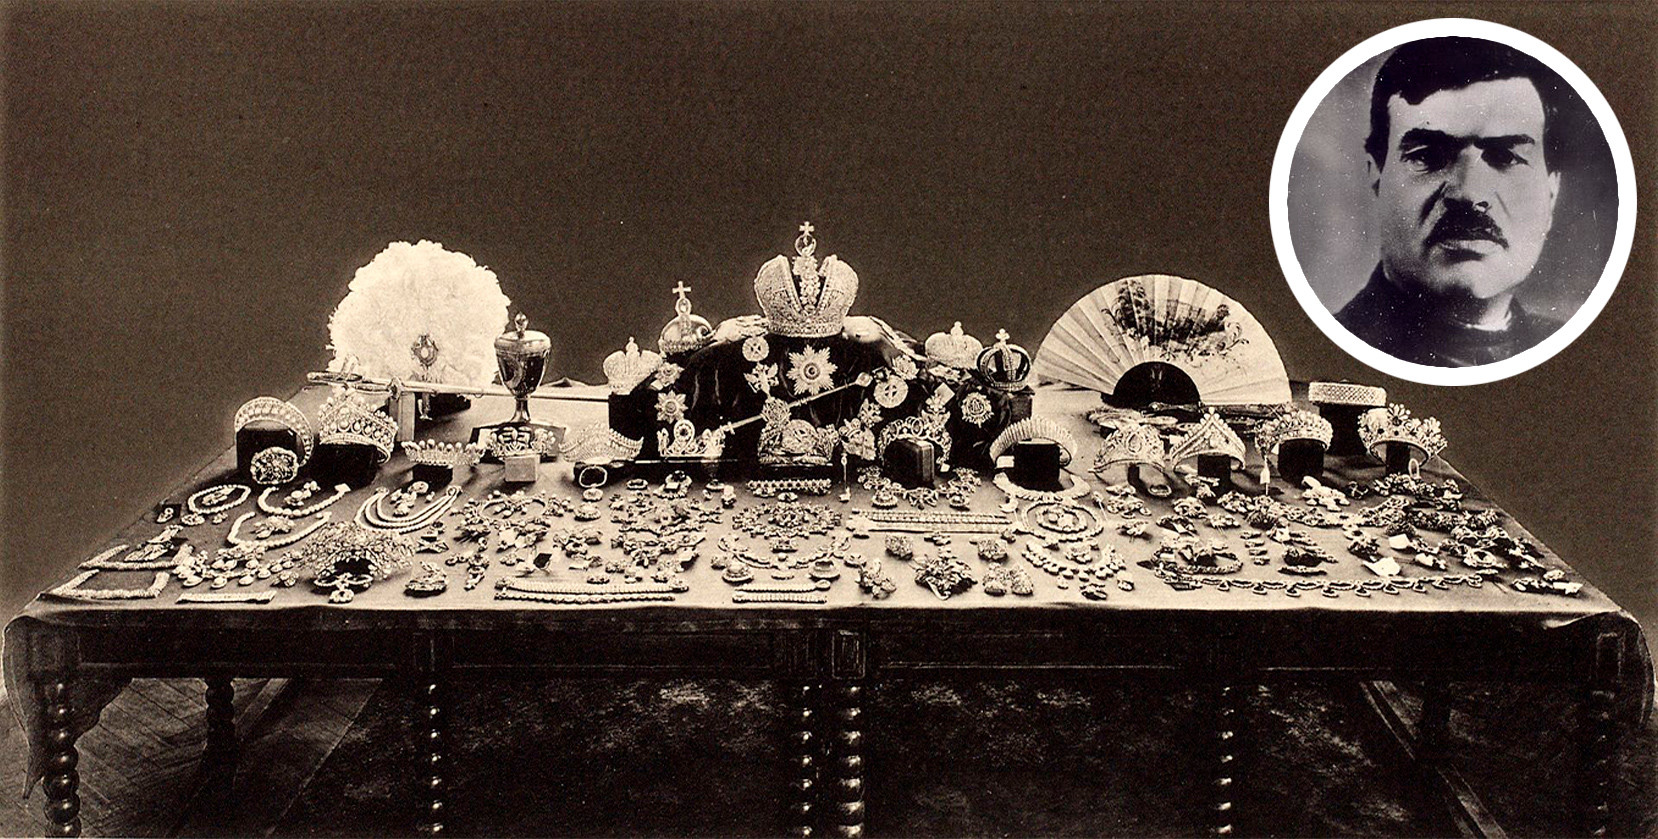 Photographie prise en 1922 par la commission soviétique, présentant la plupart des bijoux impériaux collectés. On y retrouve 13 diadèmes et bandeaux, 4 couronnes, un sceptre, une orbe crucigère, etc, amenés au Kremlin de Moscou en 1914 depuis Petrograd (actuelle Saint-Pétersbourg). Iakov Iourovski.